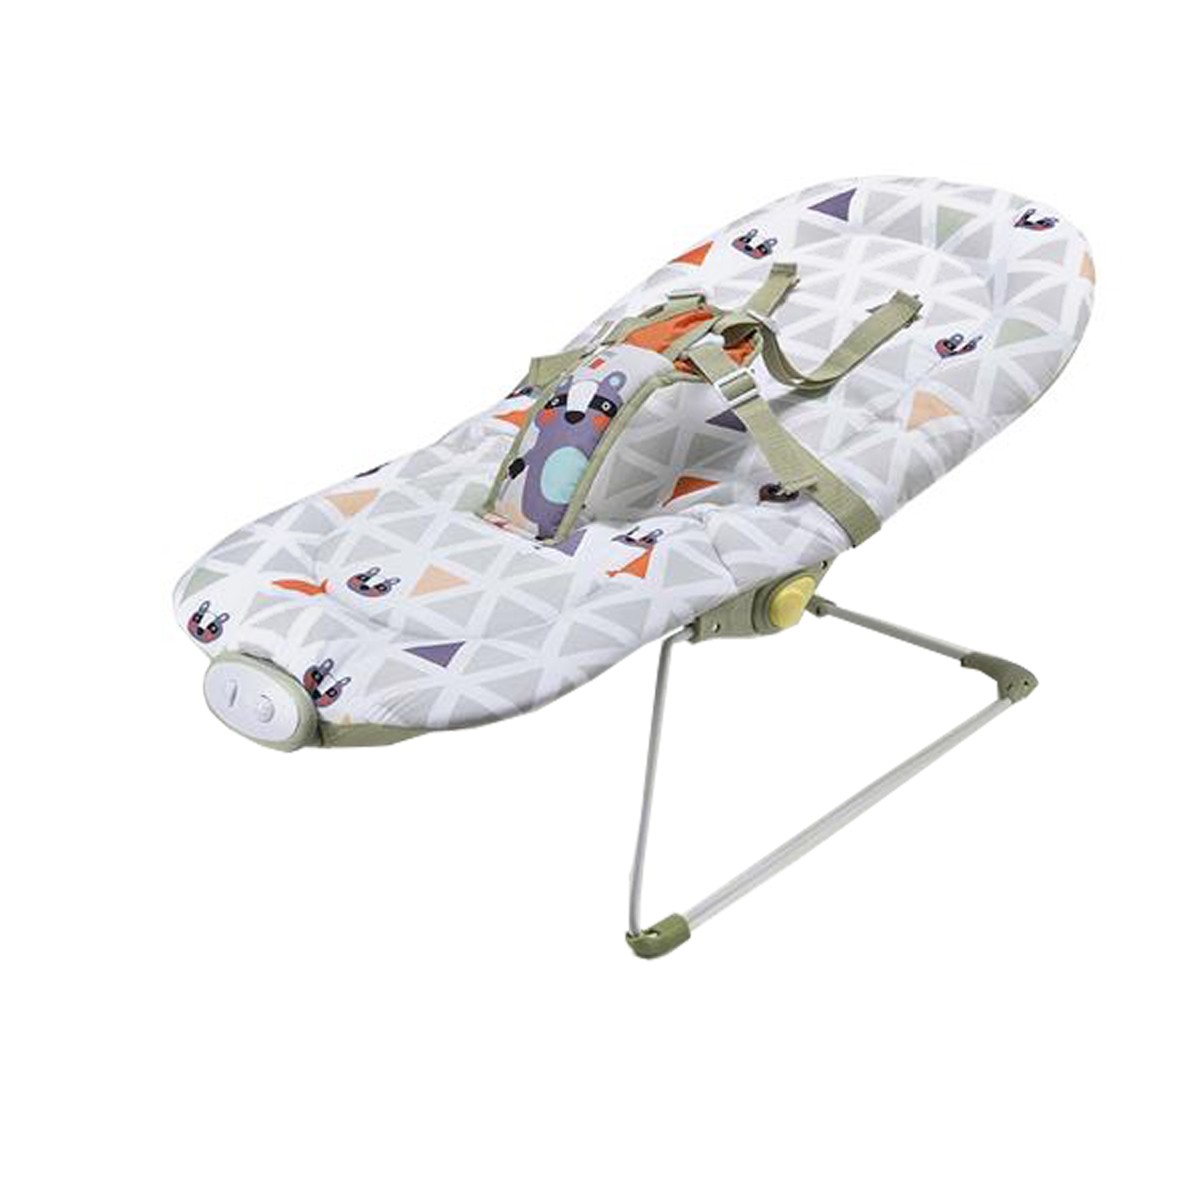 Cadeira de Descanso Musical Reclinavel até 15 Kg Weego Menino - Multikids Baby